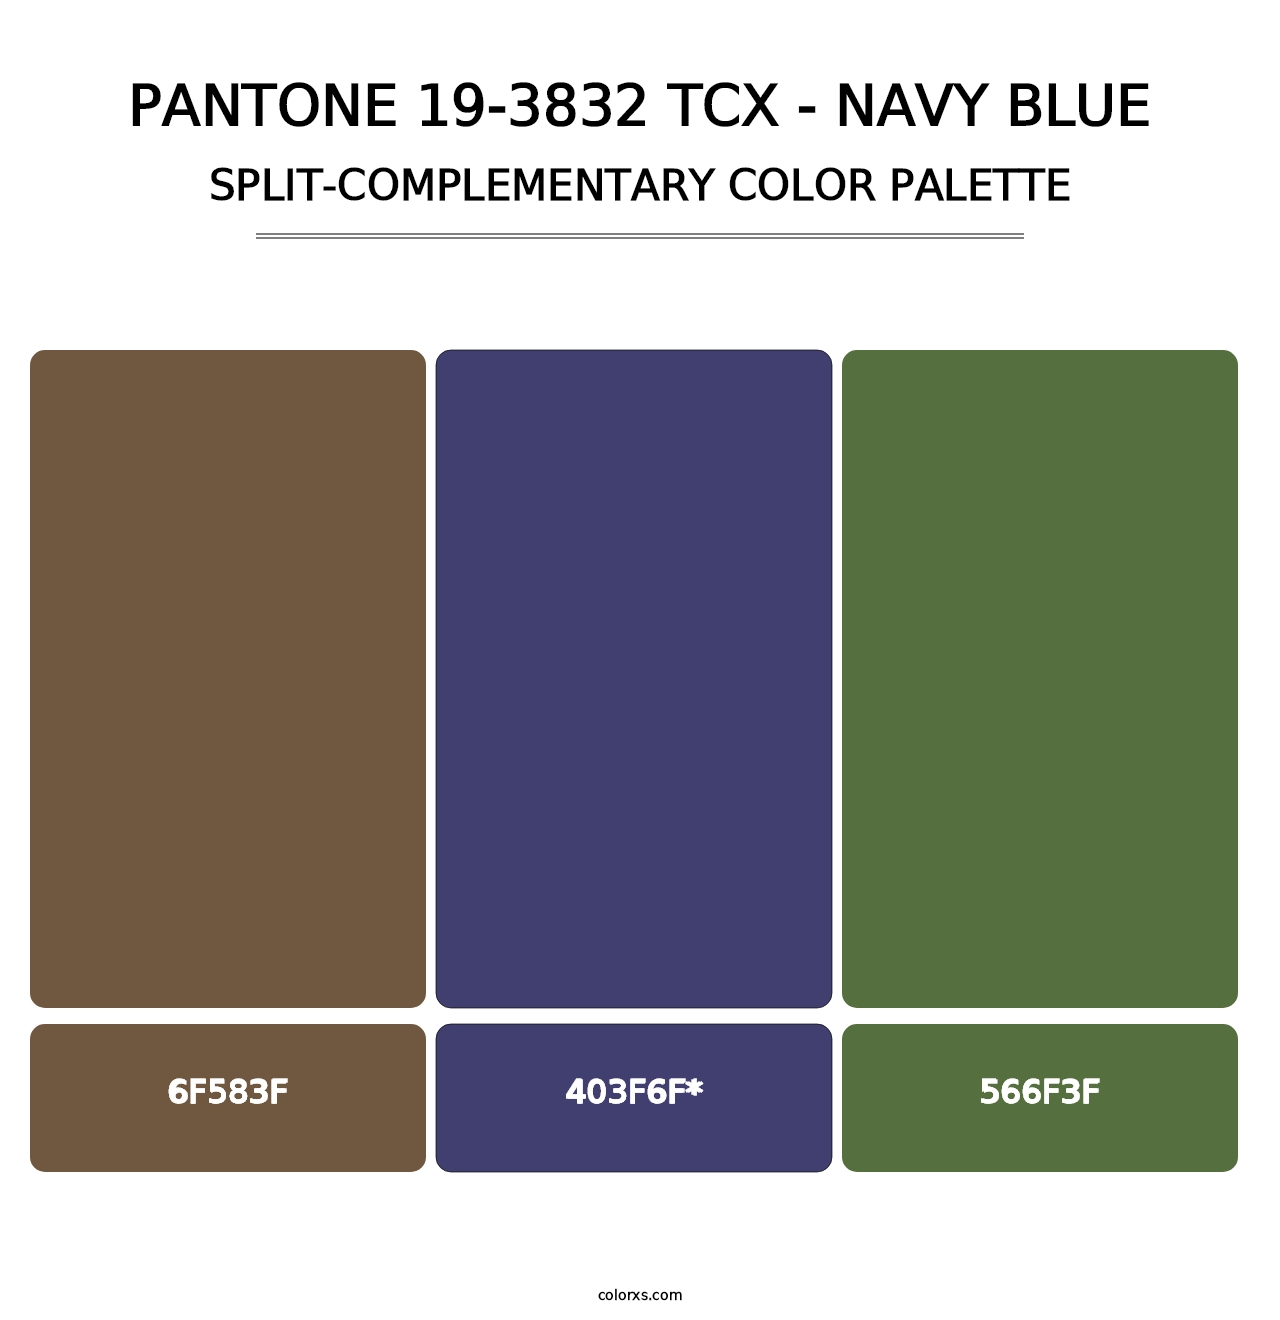 PANTONE 19-3832 TCX - Navy Blue - Split-Complementary Color Palette